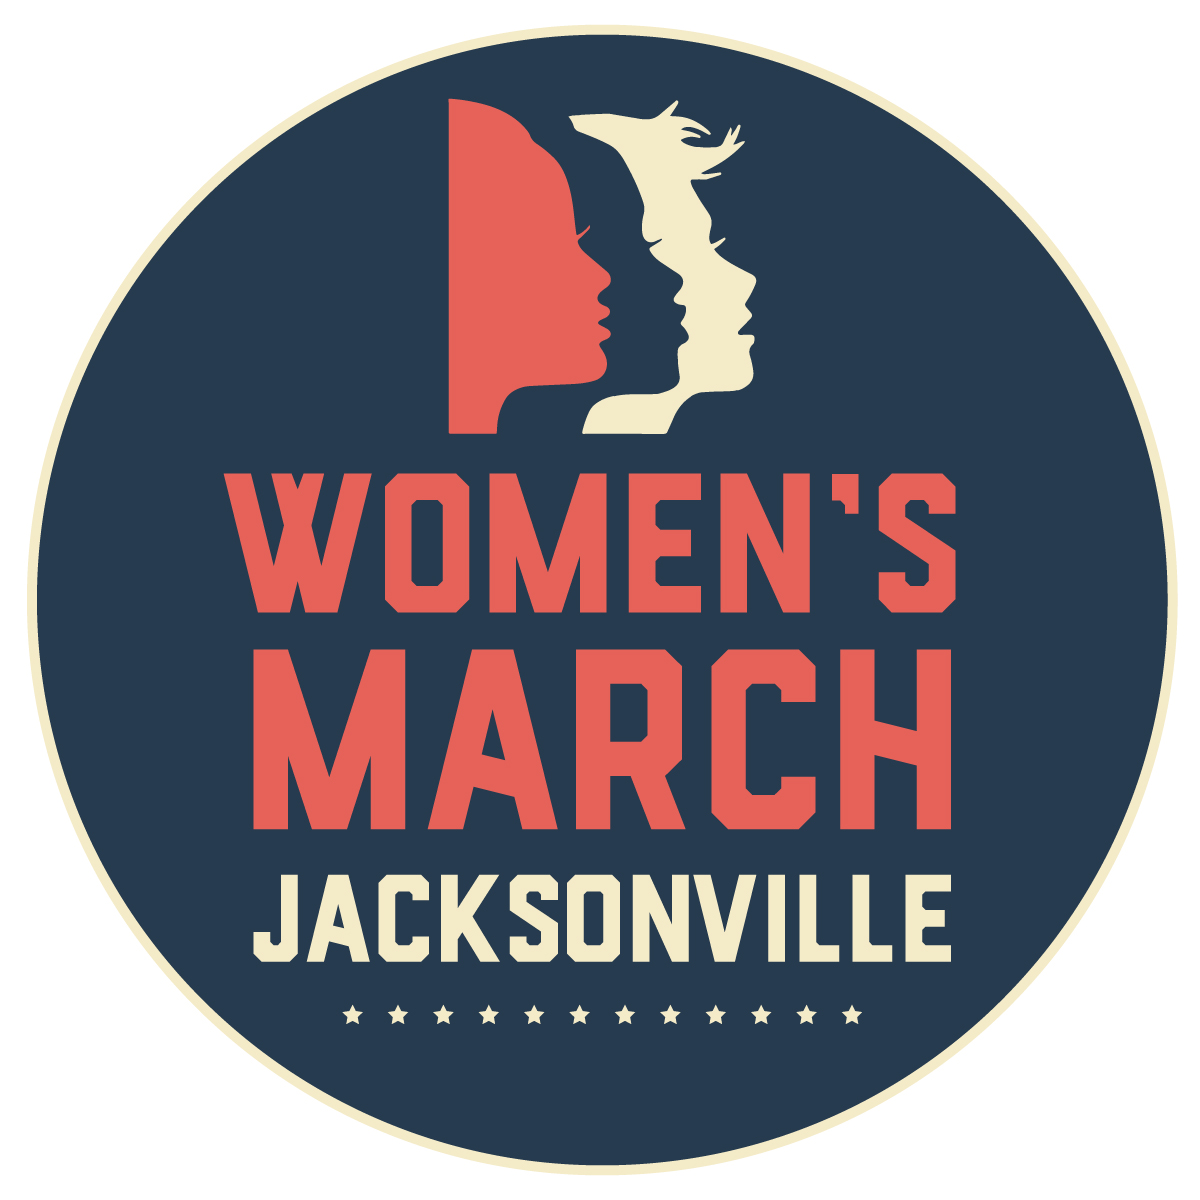 Women's March Jacksonville logo